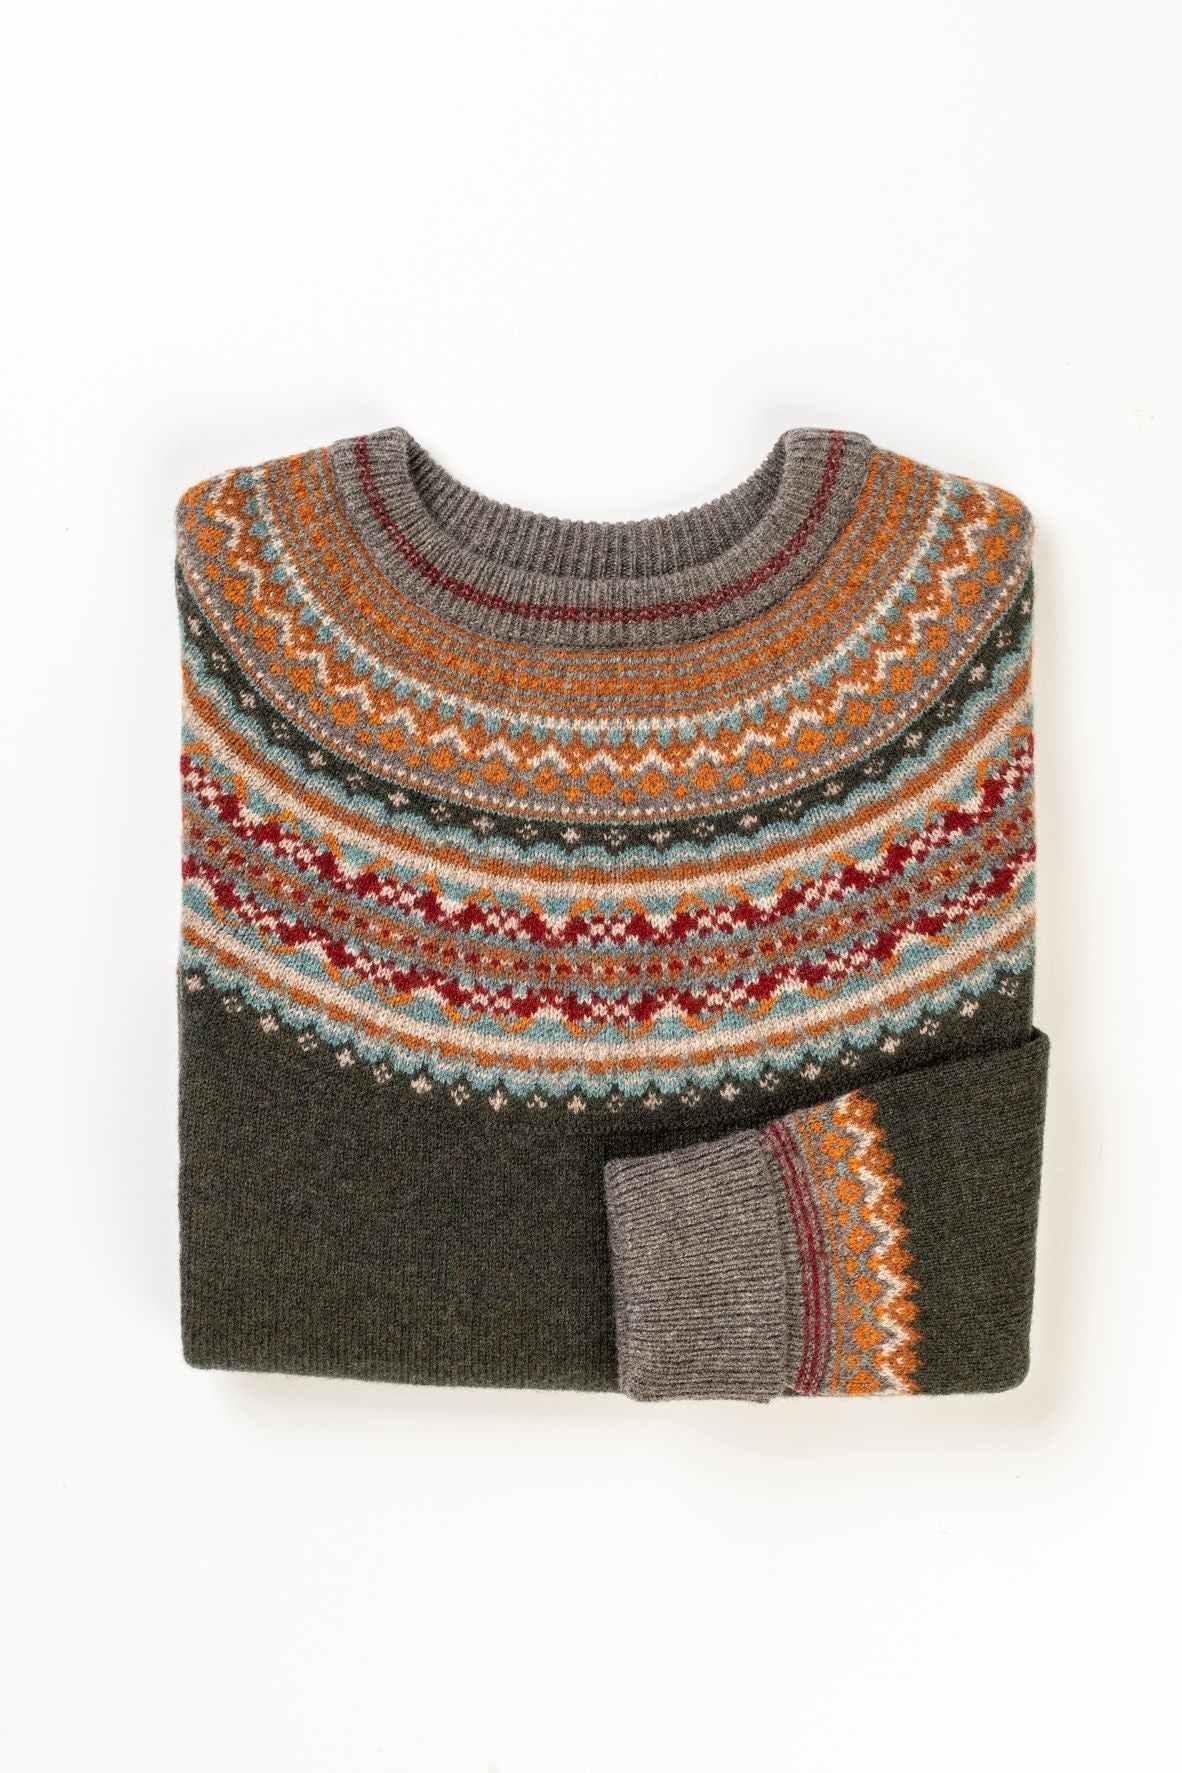 2022 'Bracken' Alpine Short Sweater 100% Merino Lambswool designed by ERIBÉ Knitwear